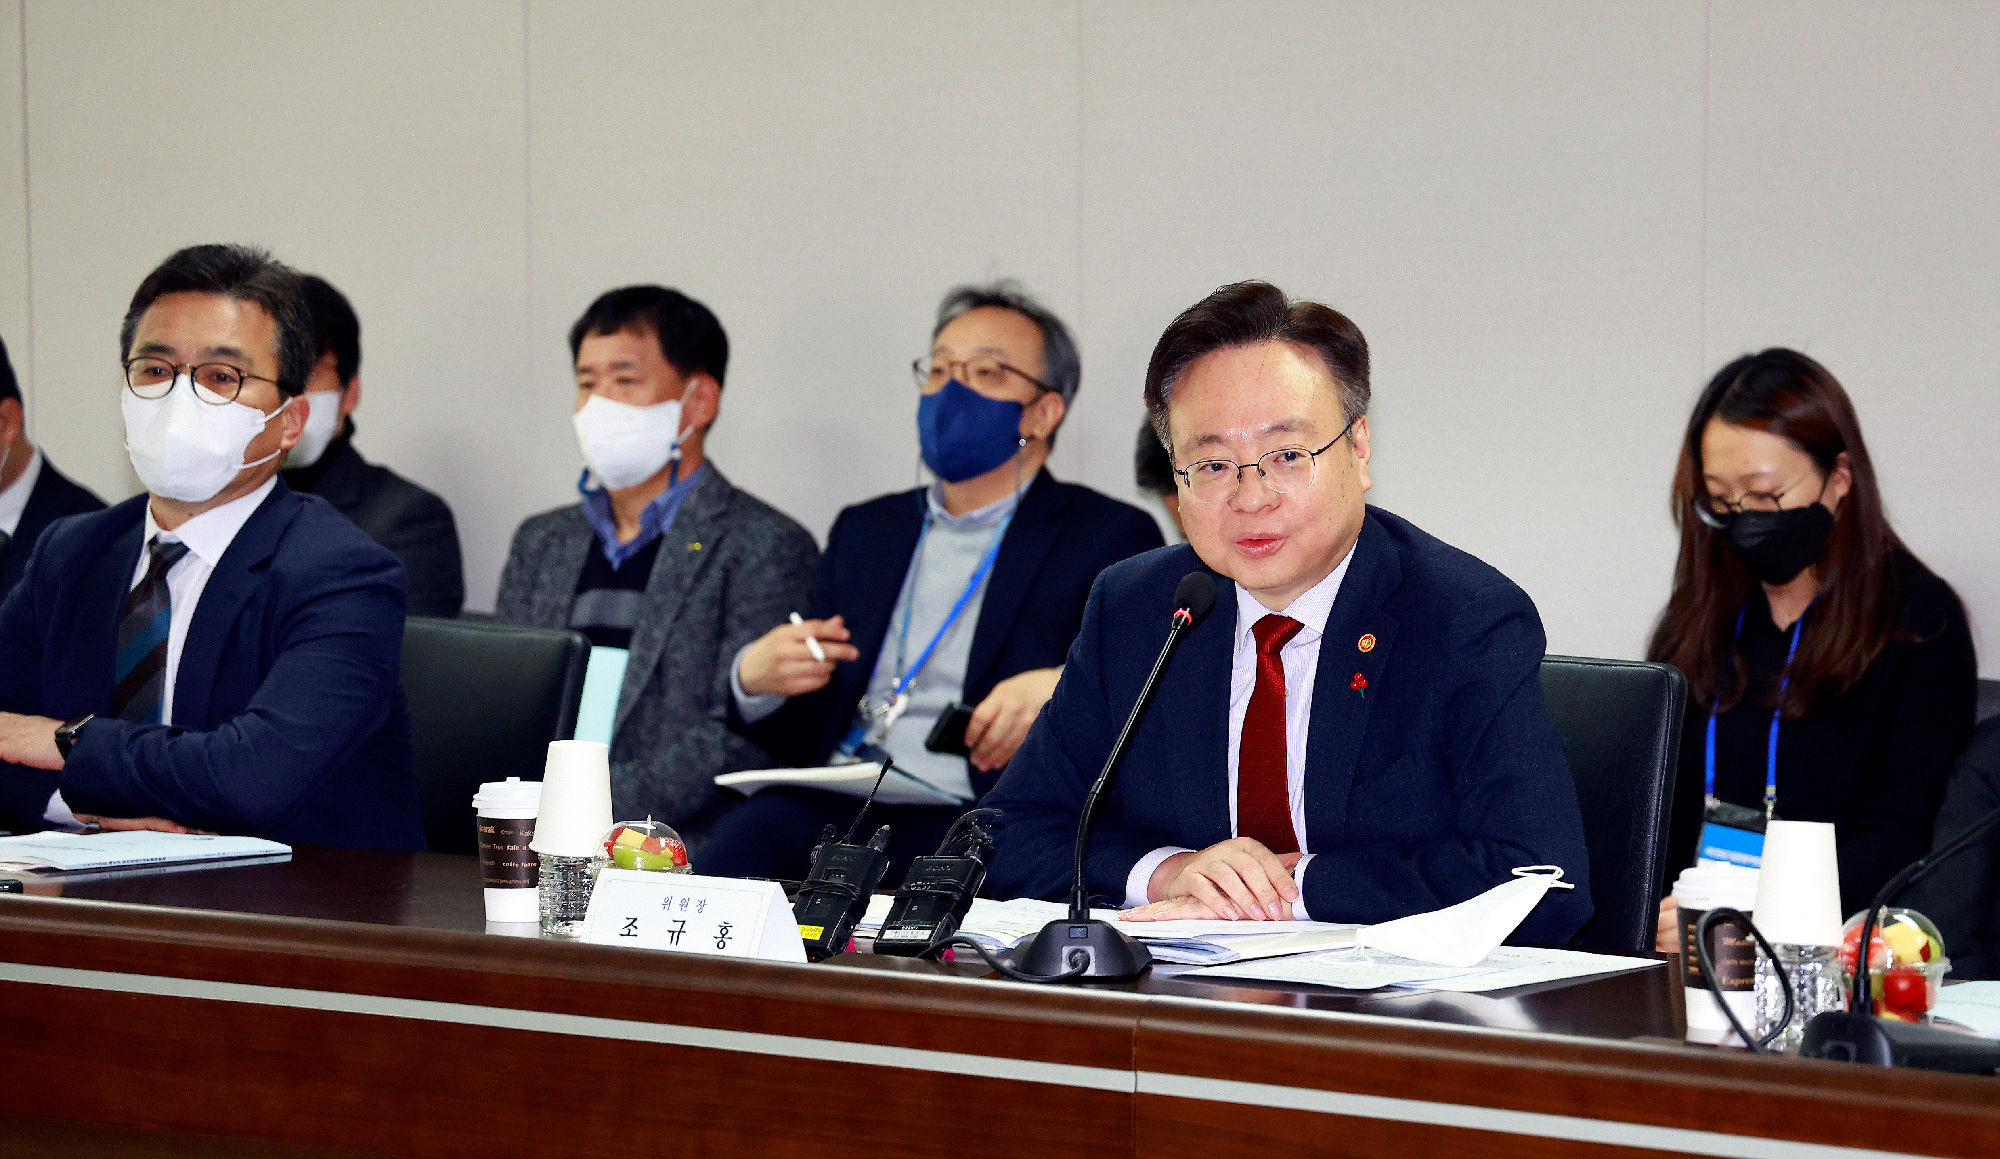 조규홍 보건복지부 장관은 16일 2022년도 제6차 기금운용위원회를 개최해 해외투자정책 조정방안을 심의·의결했다. 보건복지부 제공